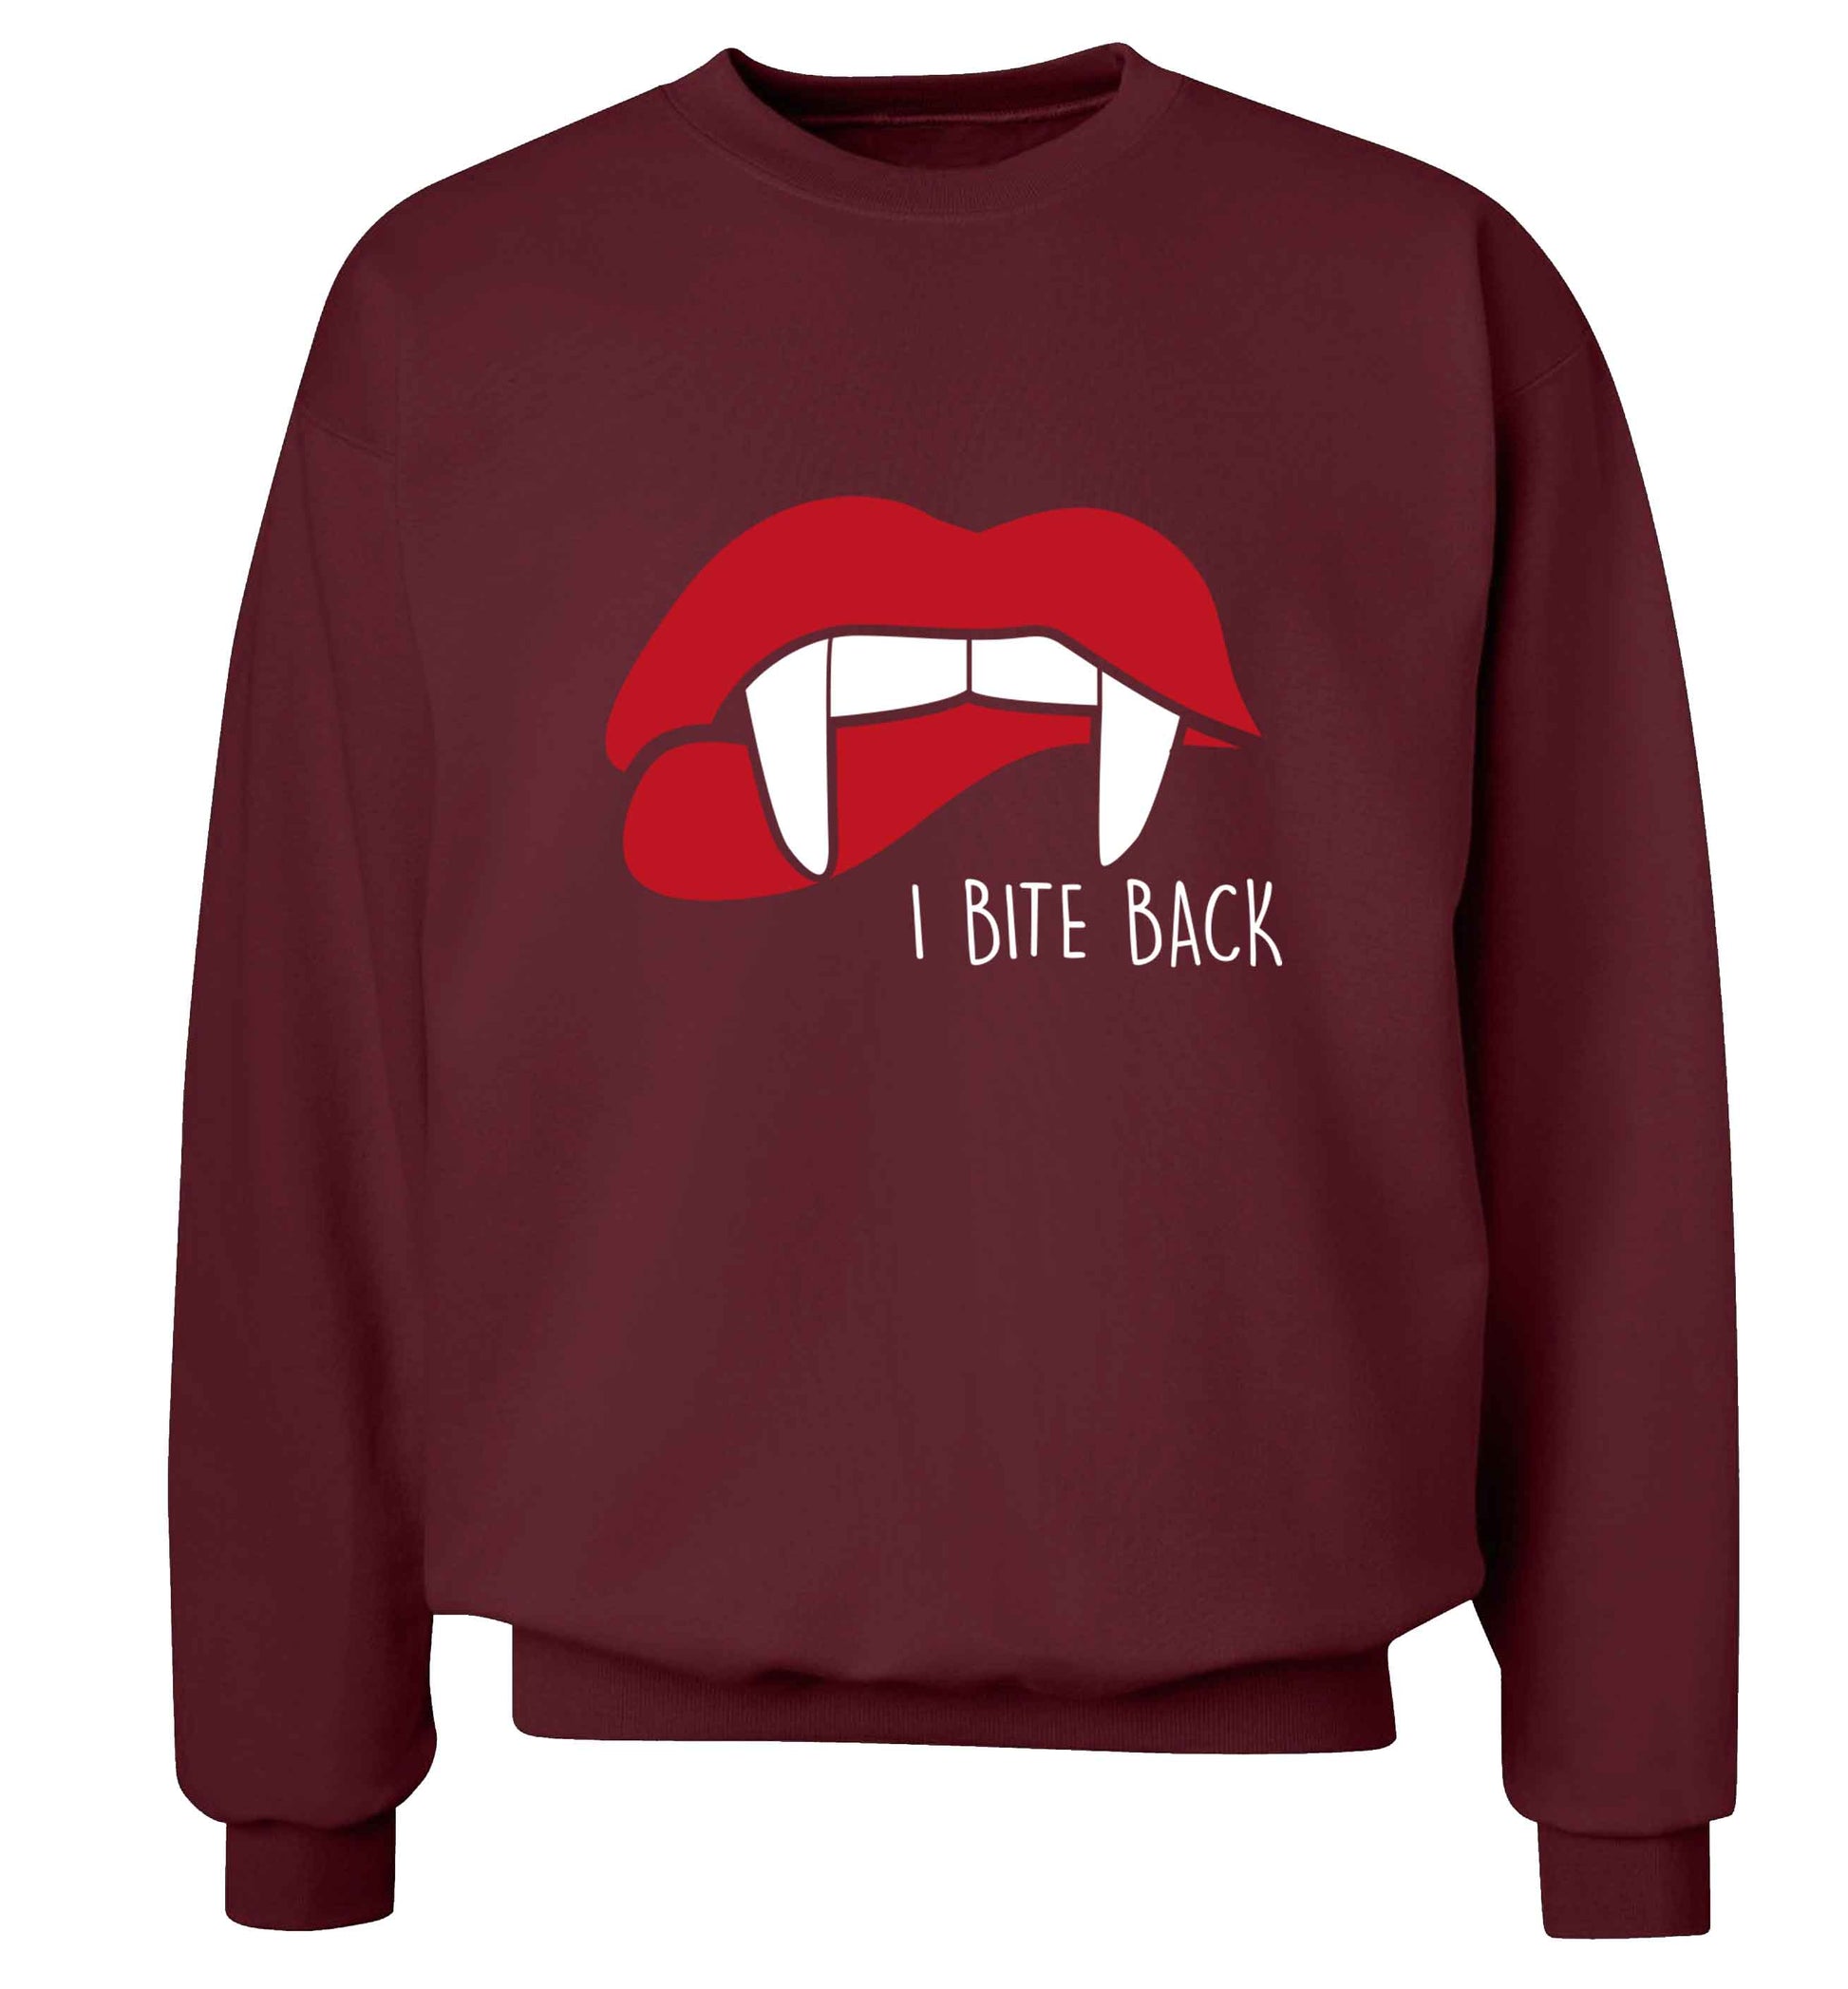 I bite back adult's unisex maroon sweater 2XL